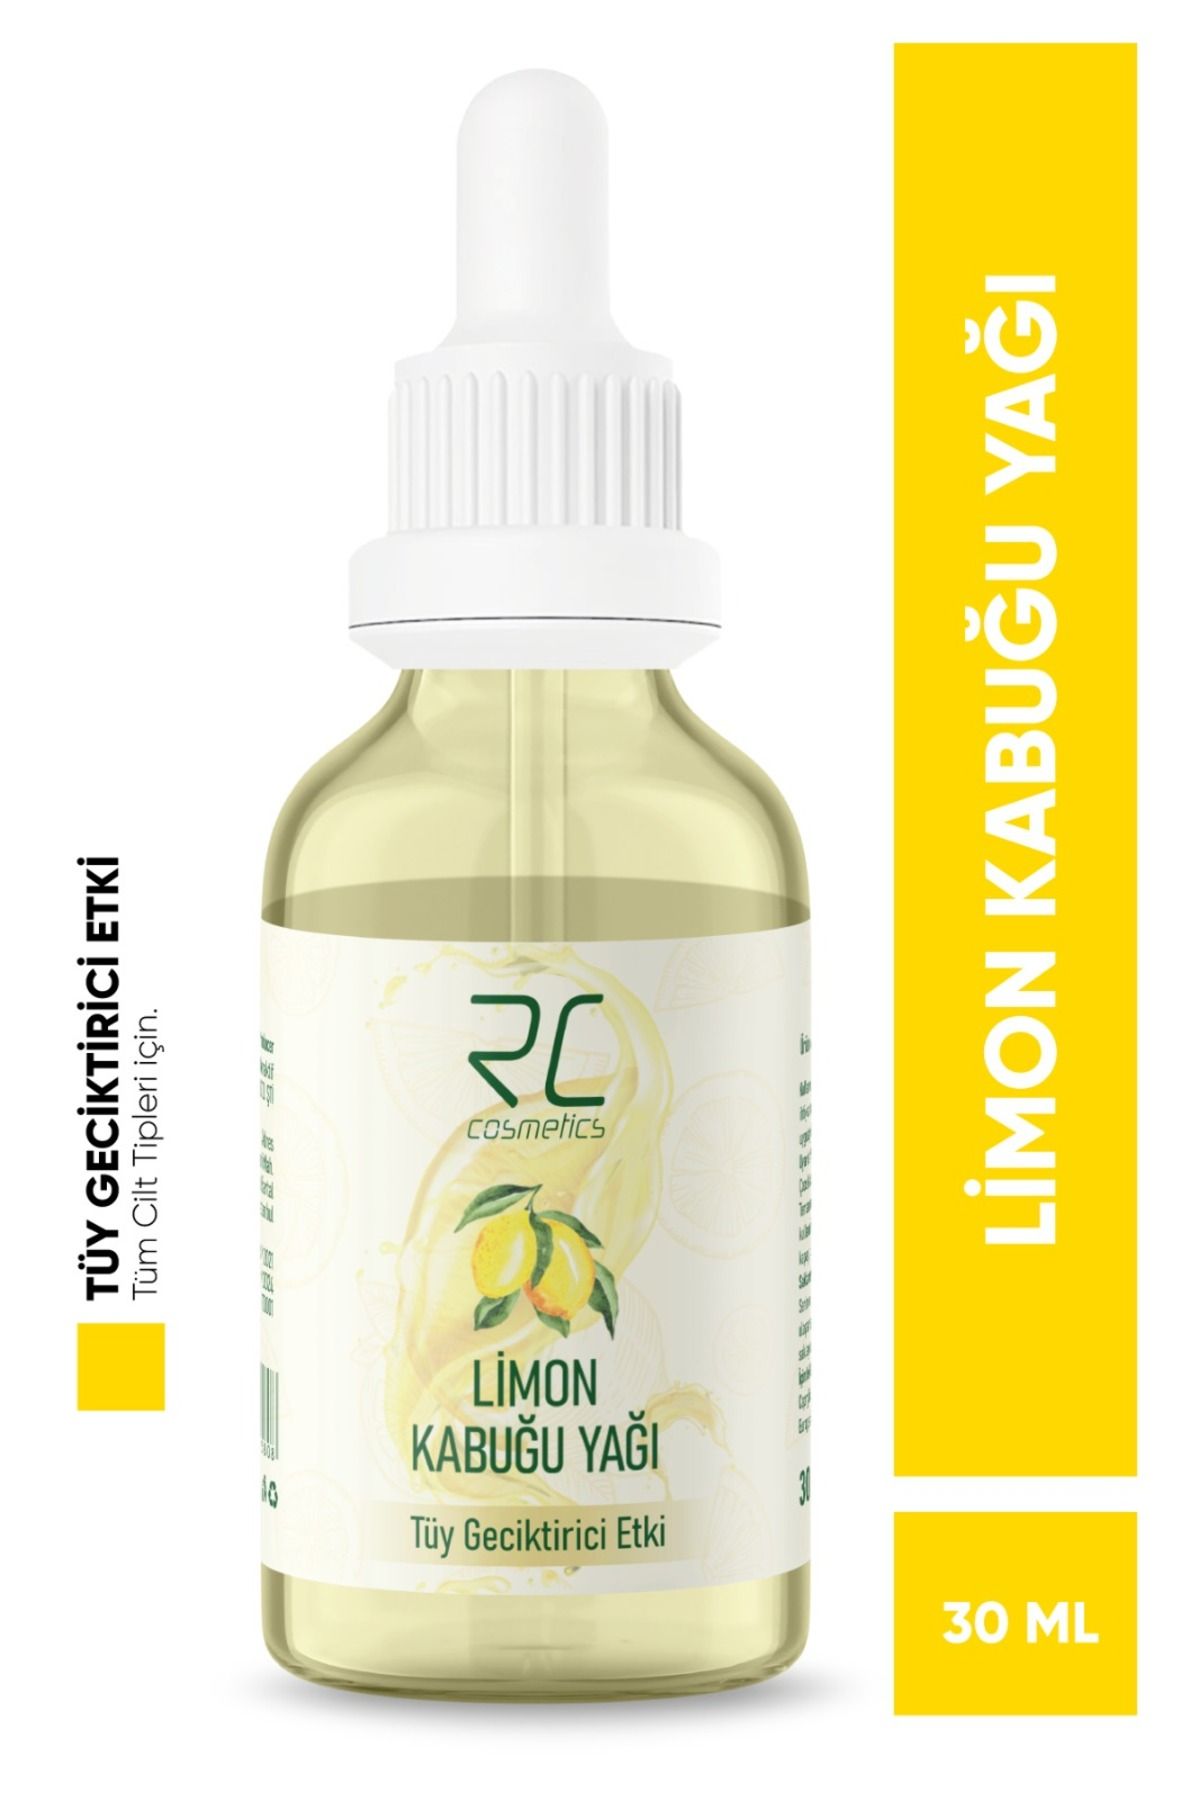 RC COSMETİCS Limon Kabuğu Yağı Tüy Geciktiricili Etki Tüy Azaltıcı Serum 30ml LKY1